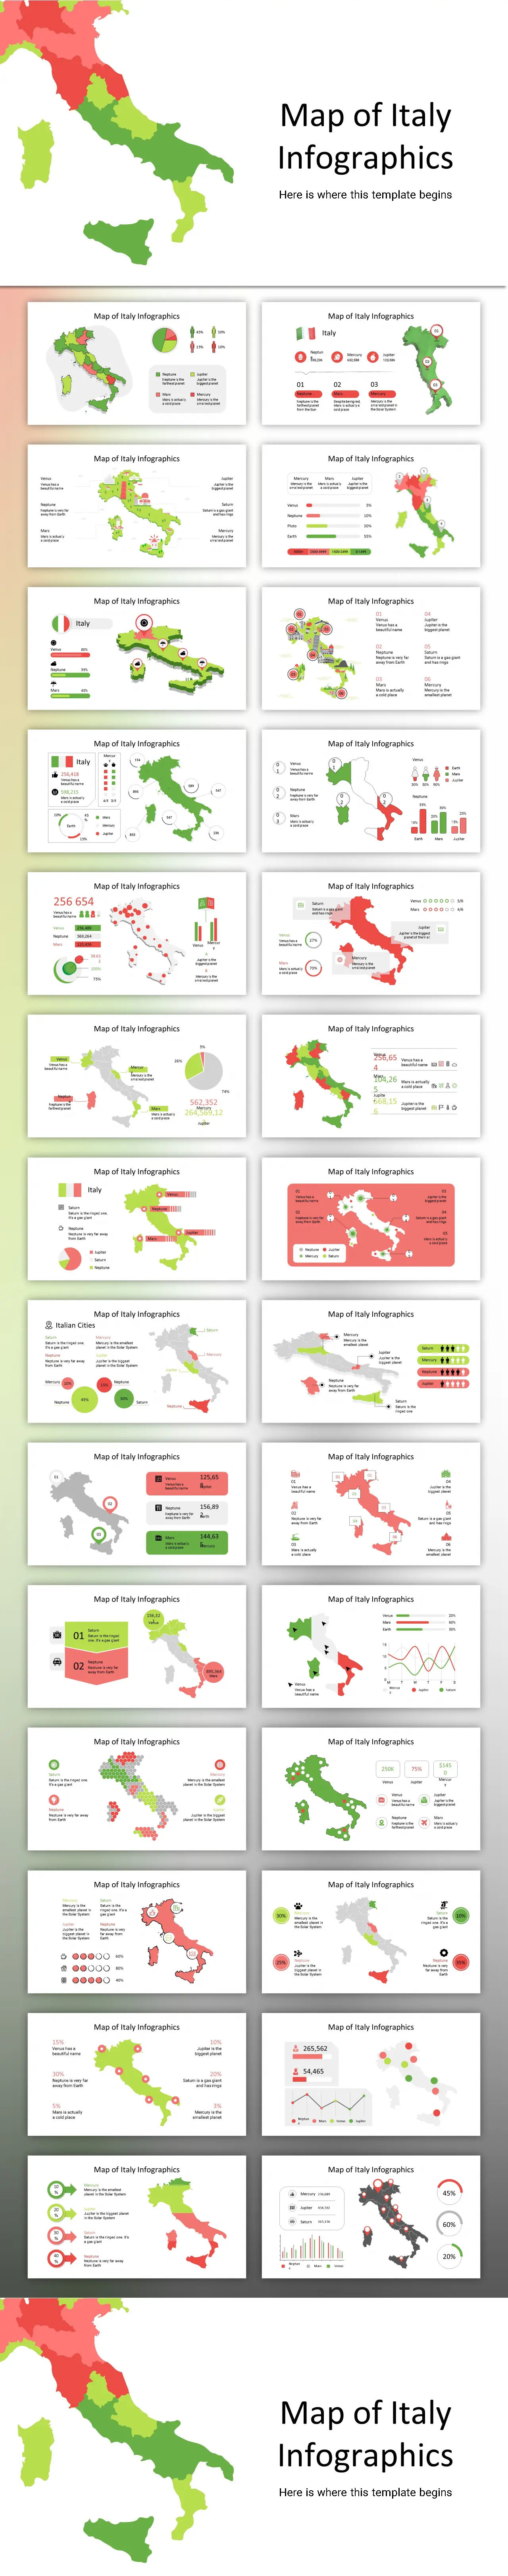 意大利地图PPT图表